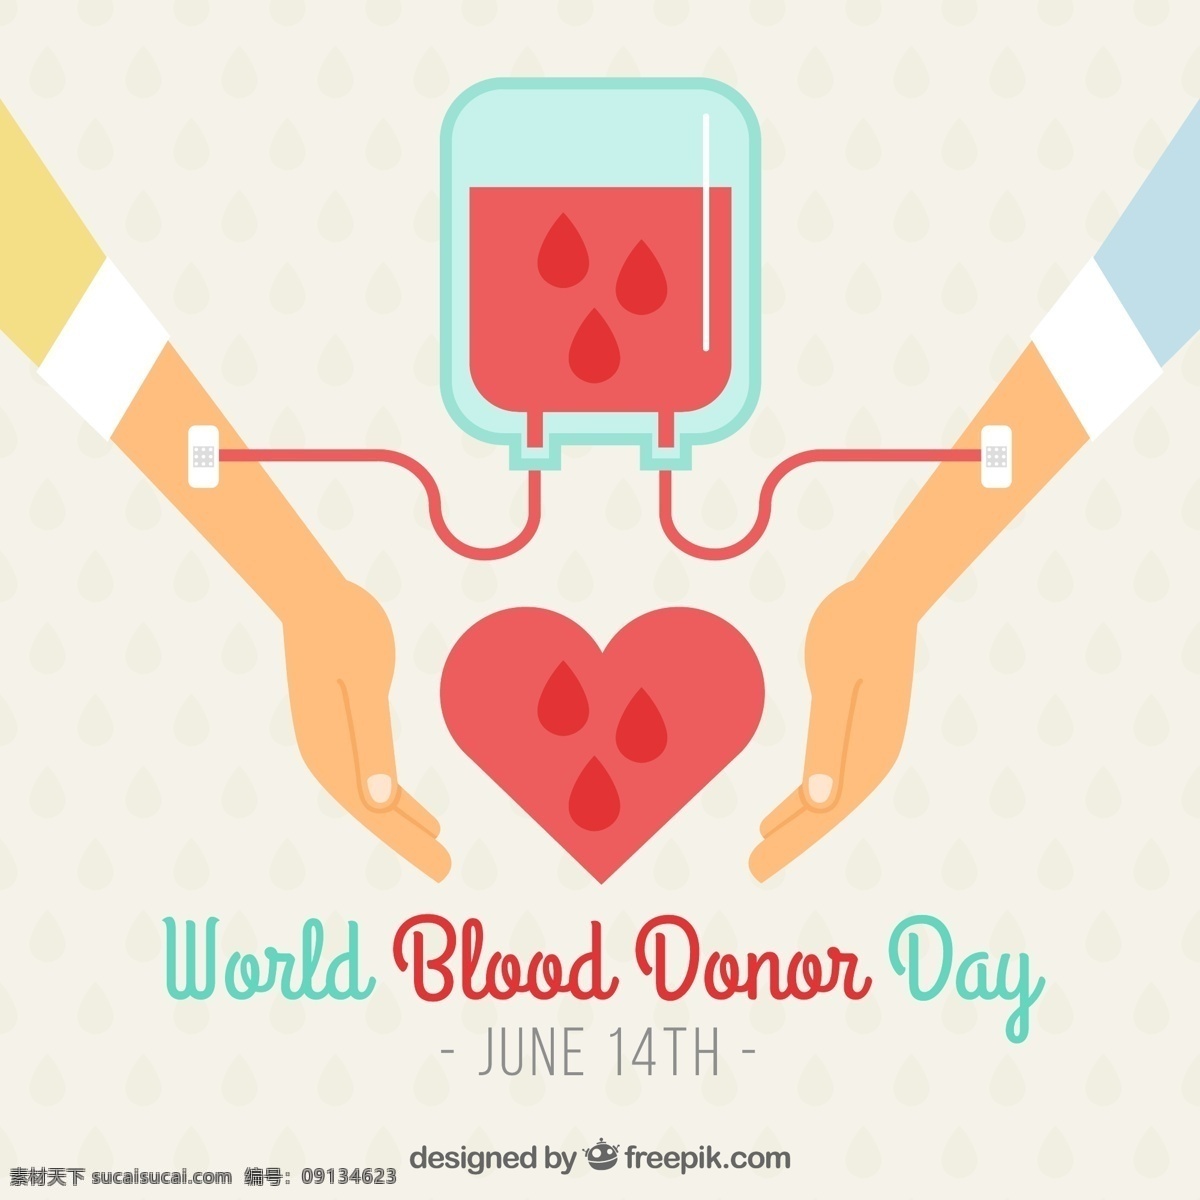 世界 献血者 日 双手 输血 心脏 背景 世界献血者日 双手输血 心脏背景